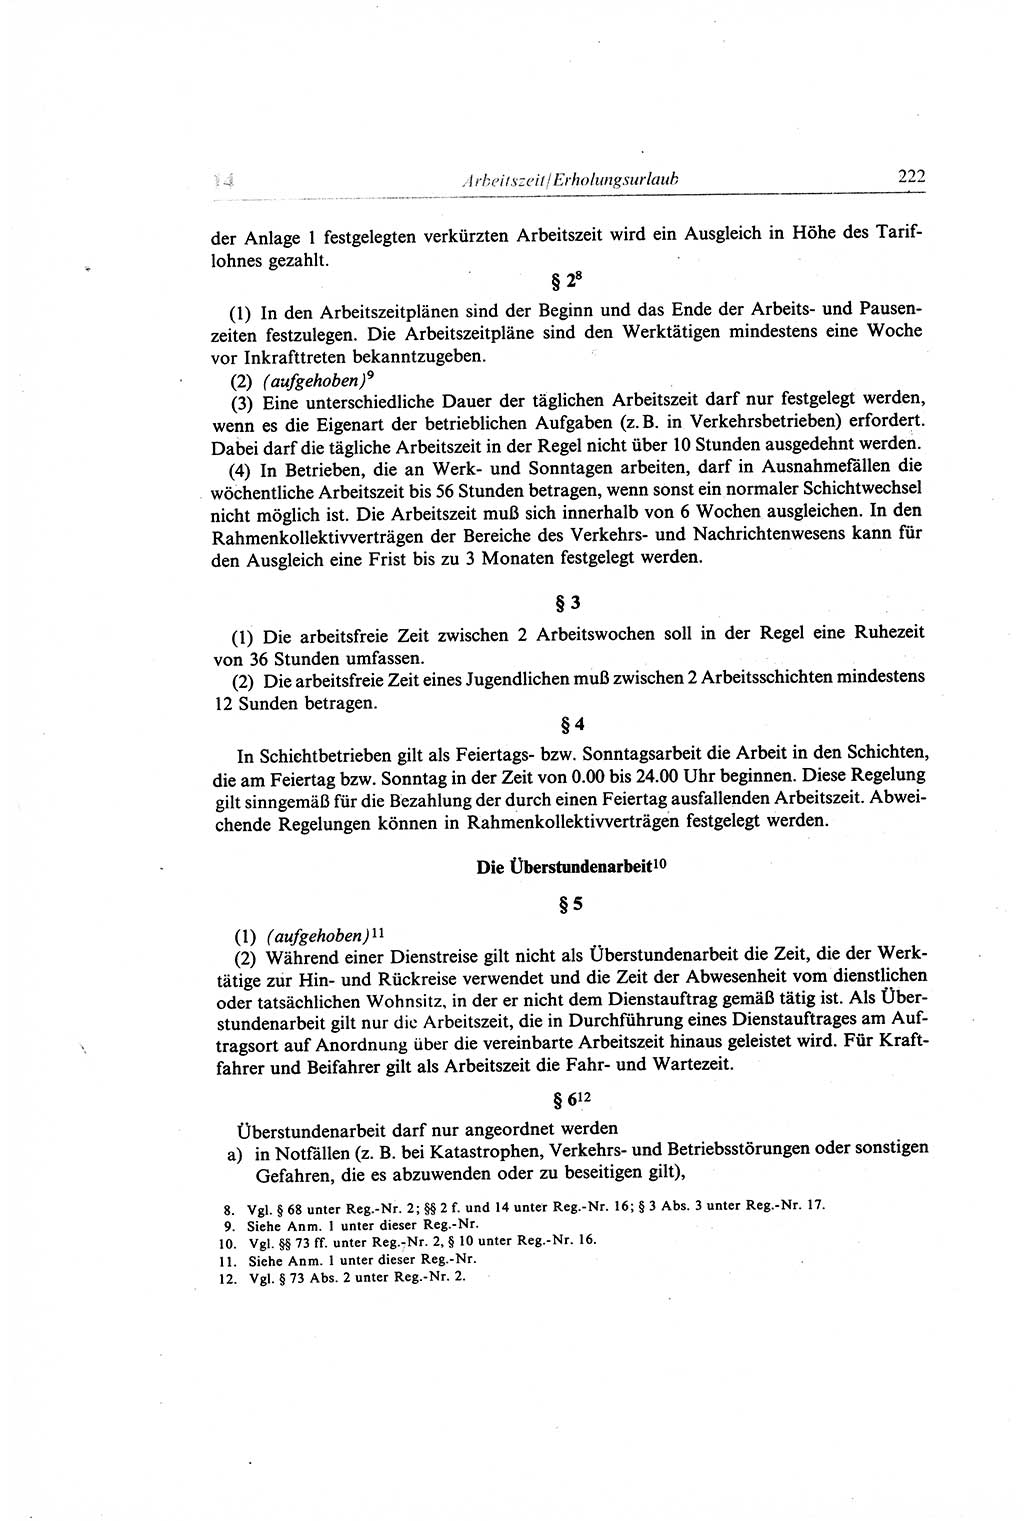 Gesetzbuch der Arbeit (GBA) und andere ausgewählte rechtliche Bestimmungen [Deutsche Demokratische Republik (DDR)] 1968, Seite 222 (GBA DDR 1968, S. 222)